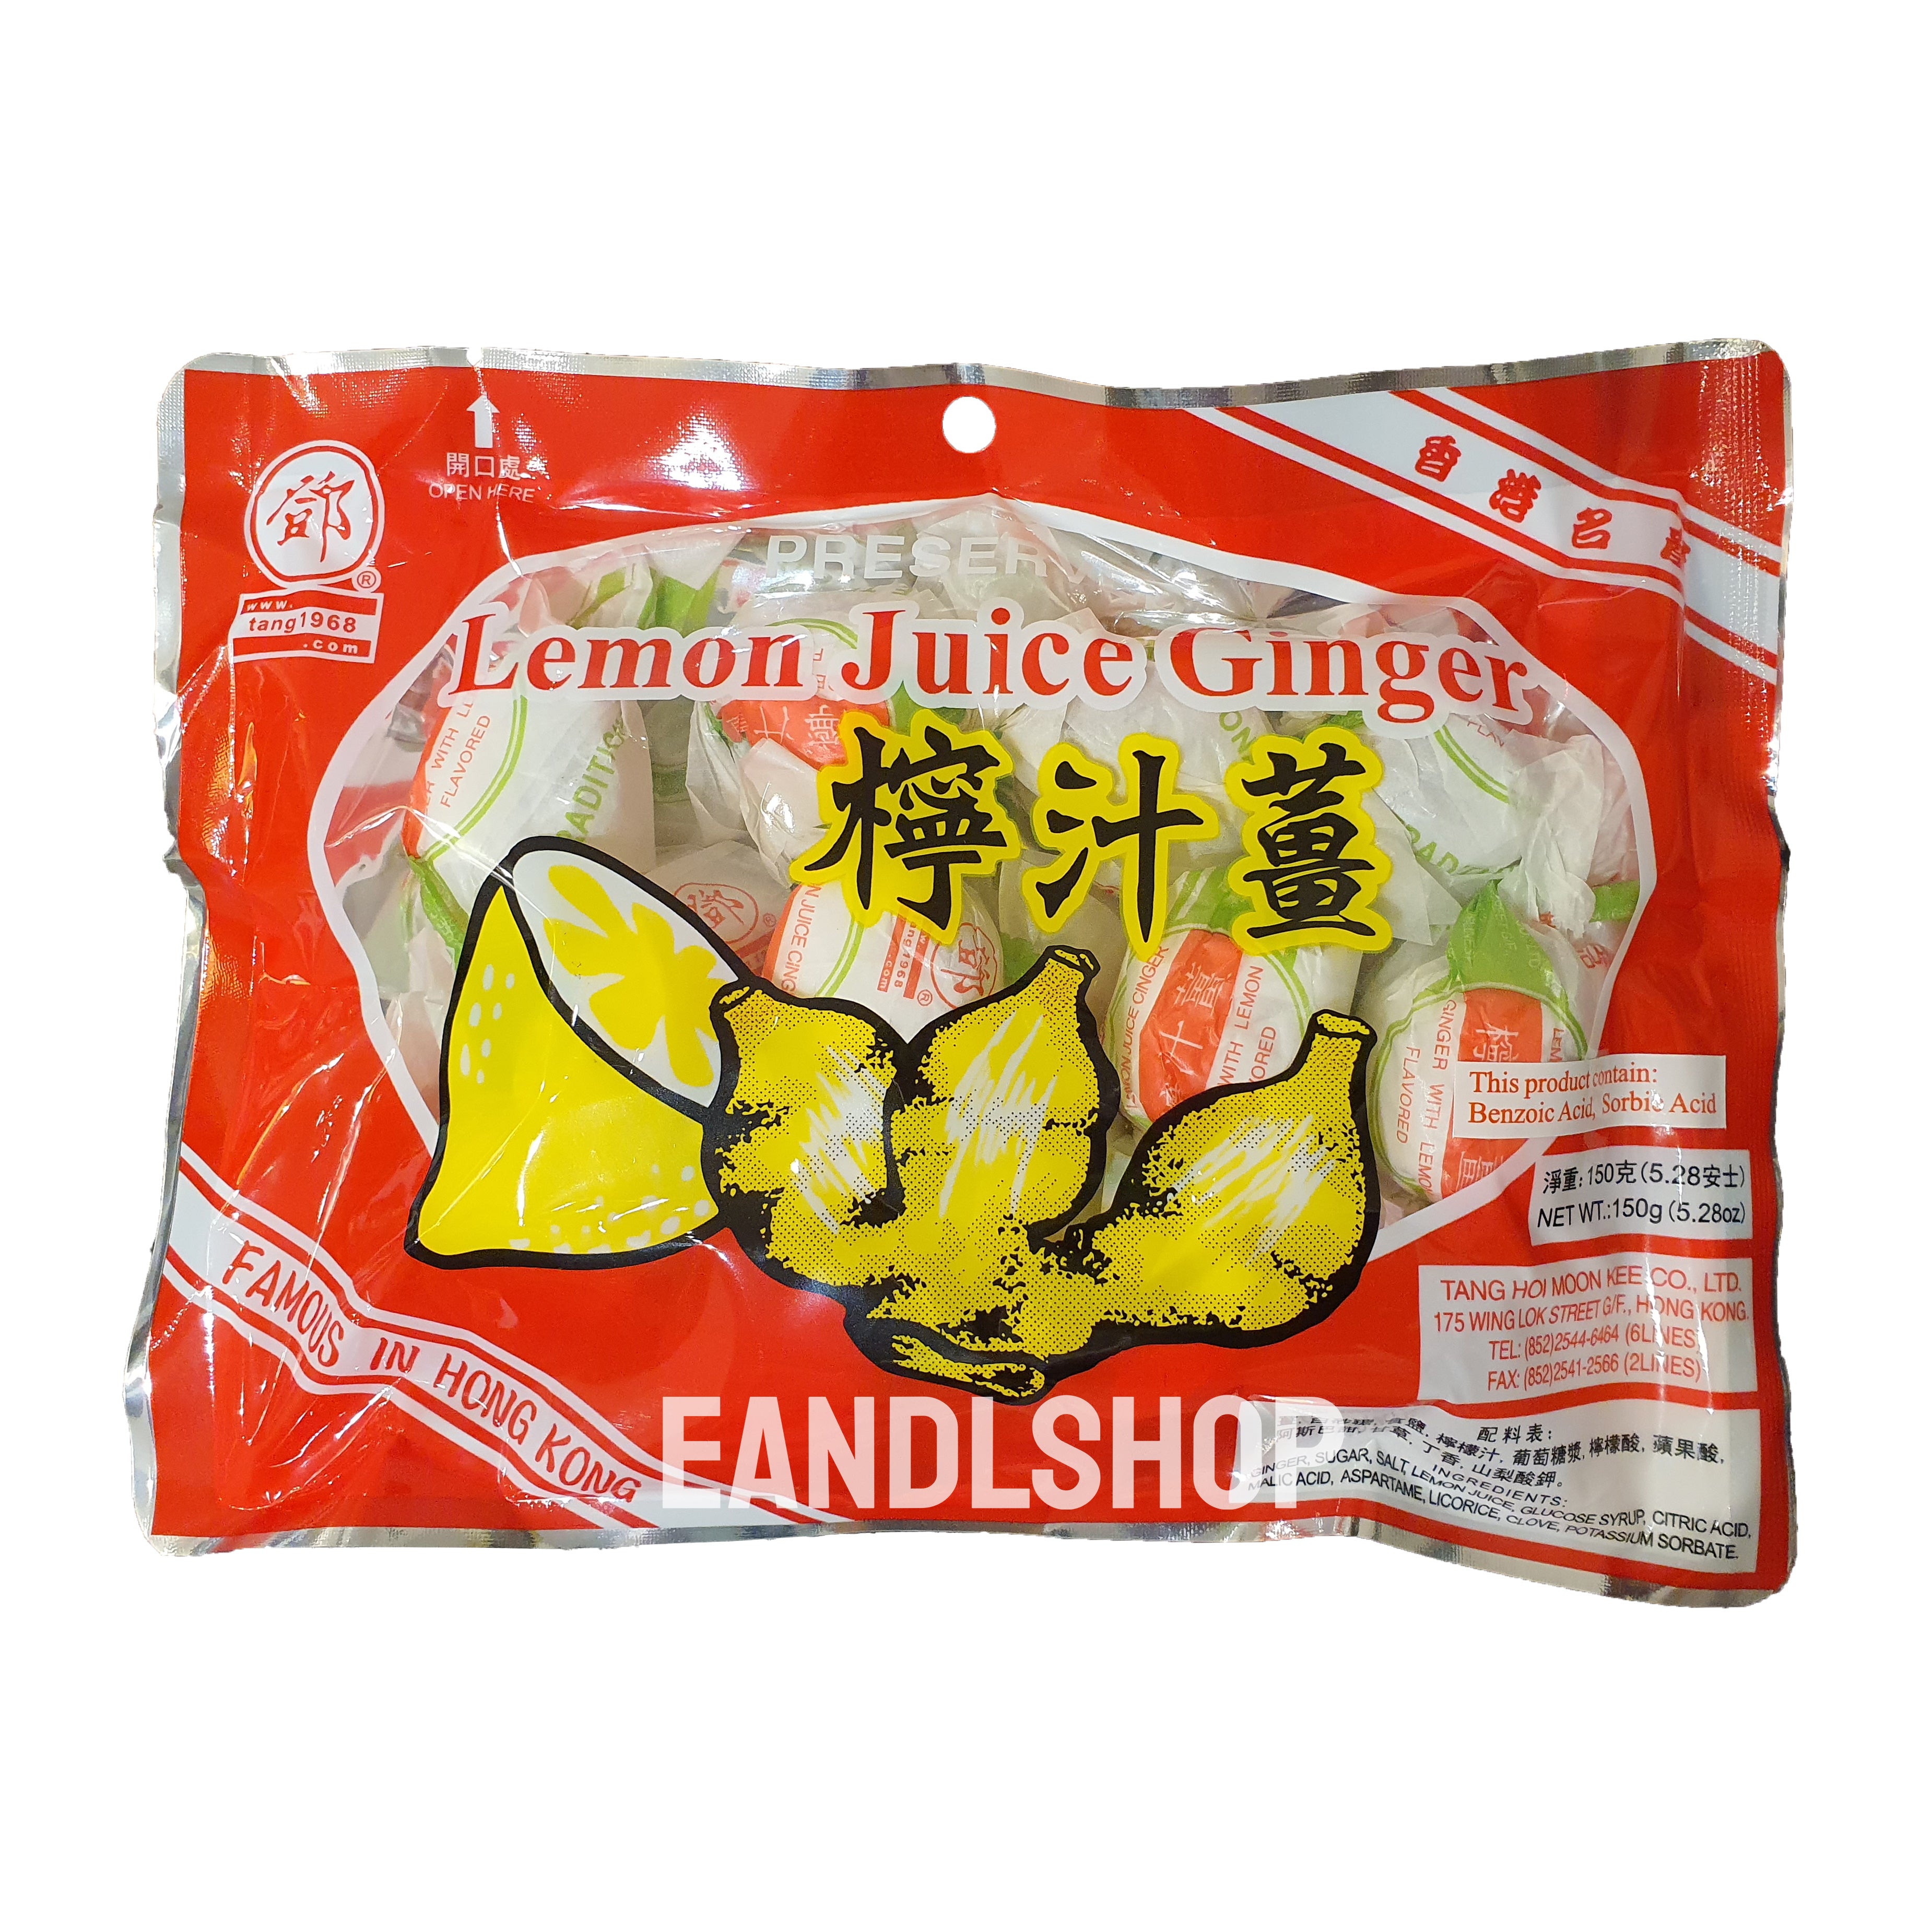 Preserved Lemon Juice Ginger (Seedless) – EANDLSHOP